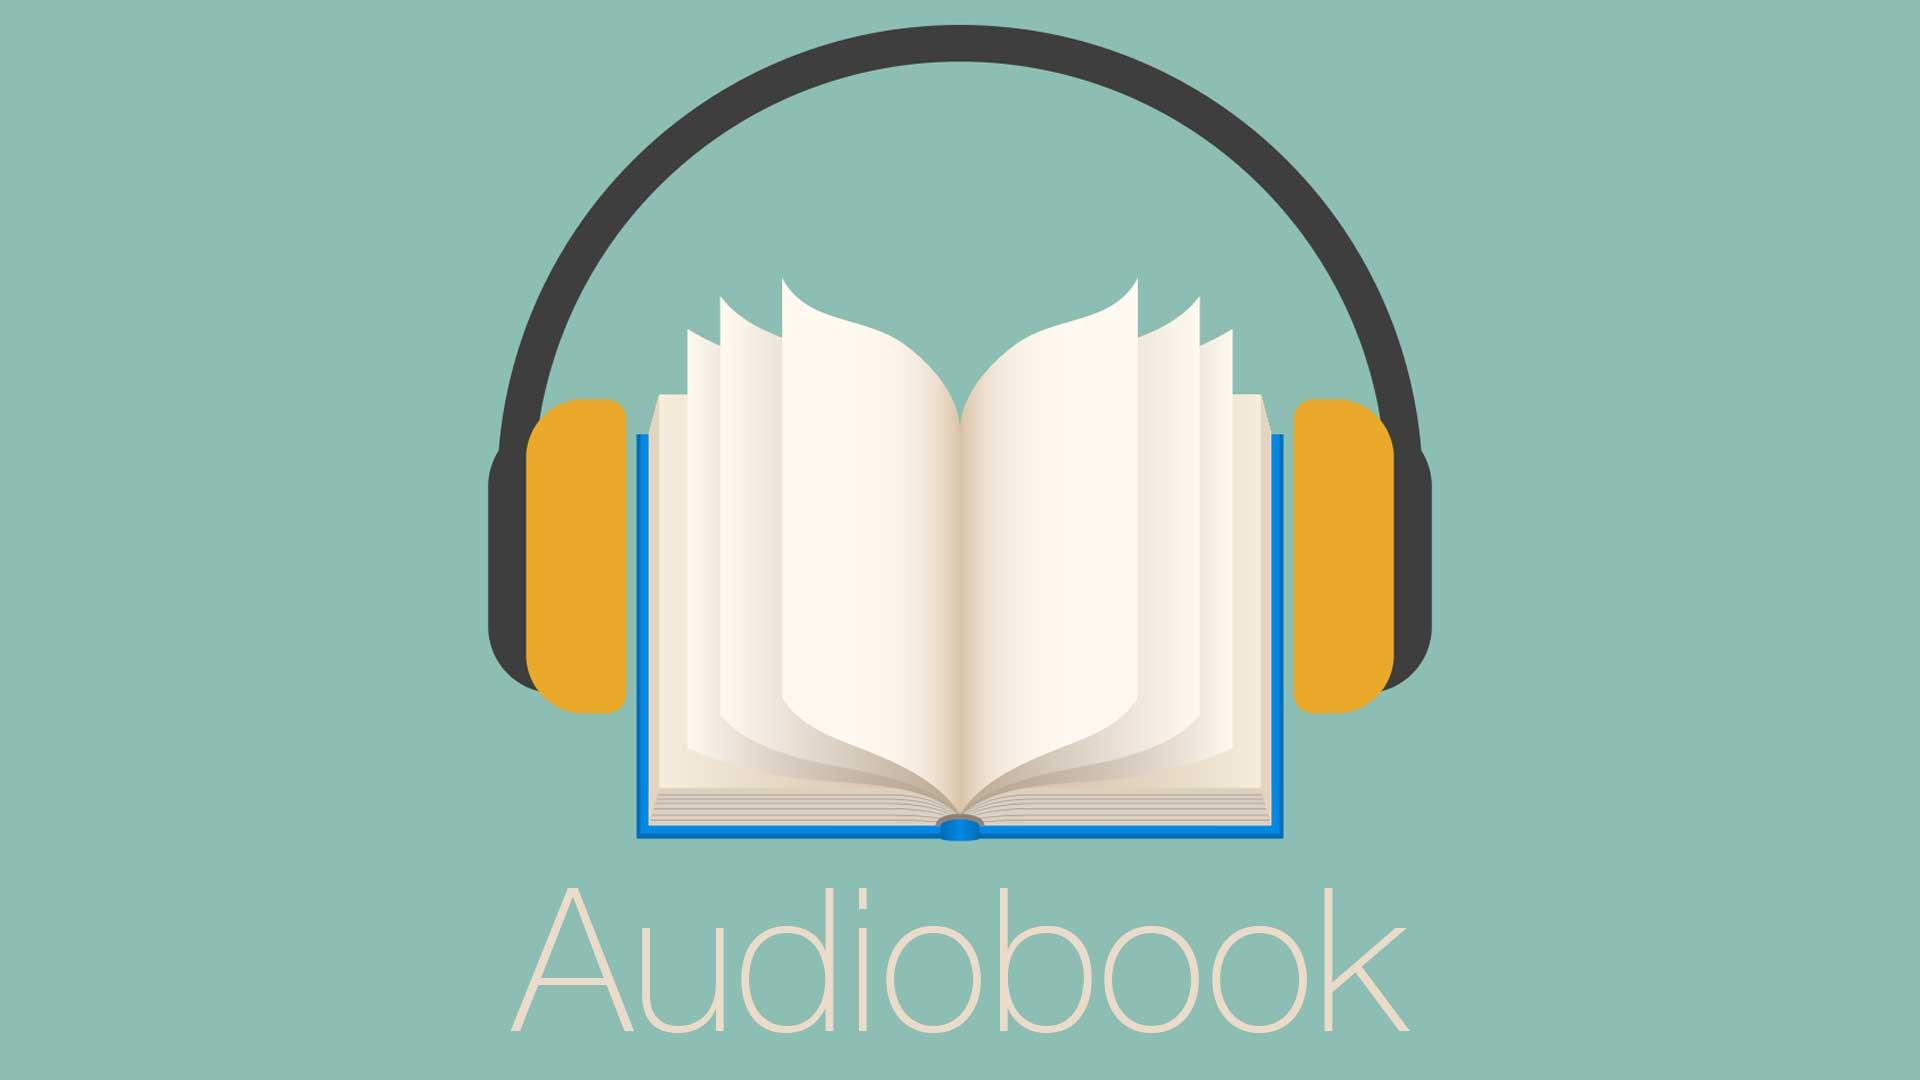 Meus 49 audiobooks favoritos sobre Marketing, Negócios e Desenvolvimento Pessoal